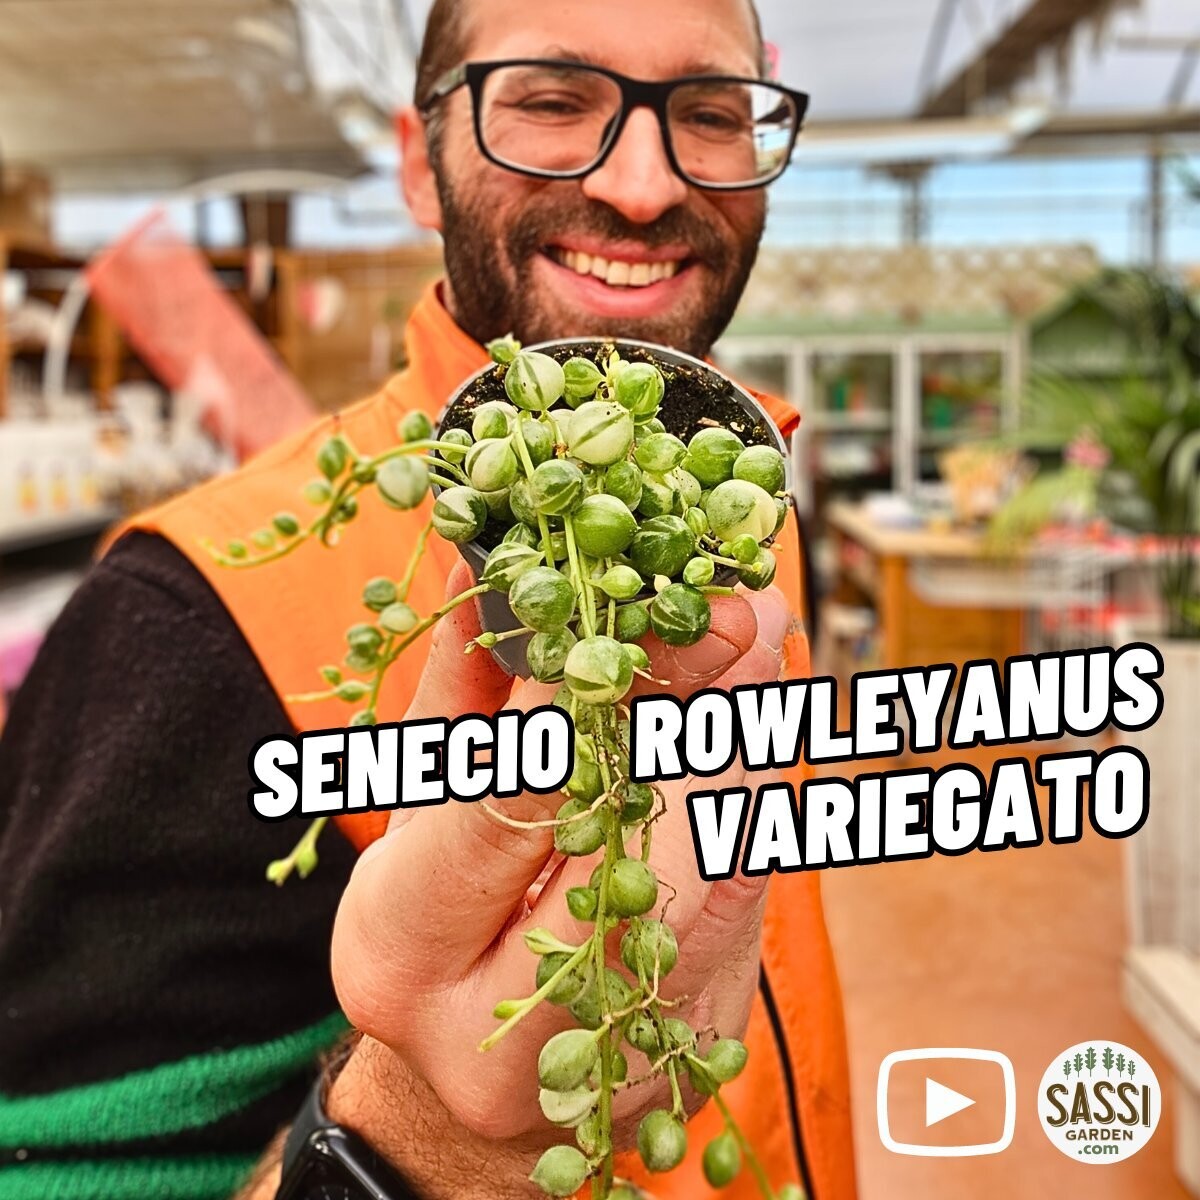 Senecio rowleyanus variegato, Pianta Rosario - vaso Ø6 cm